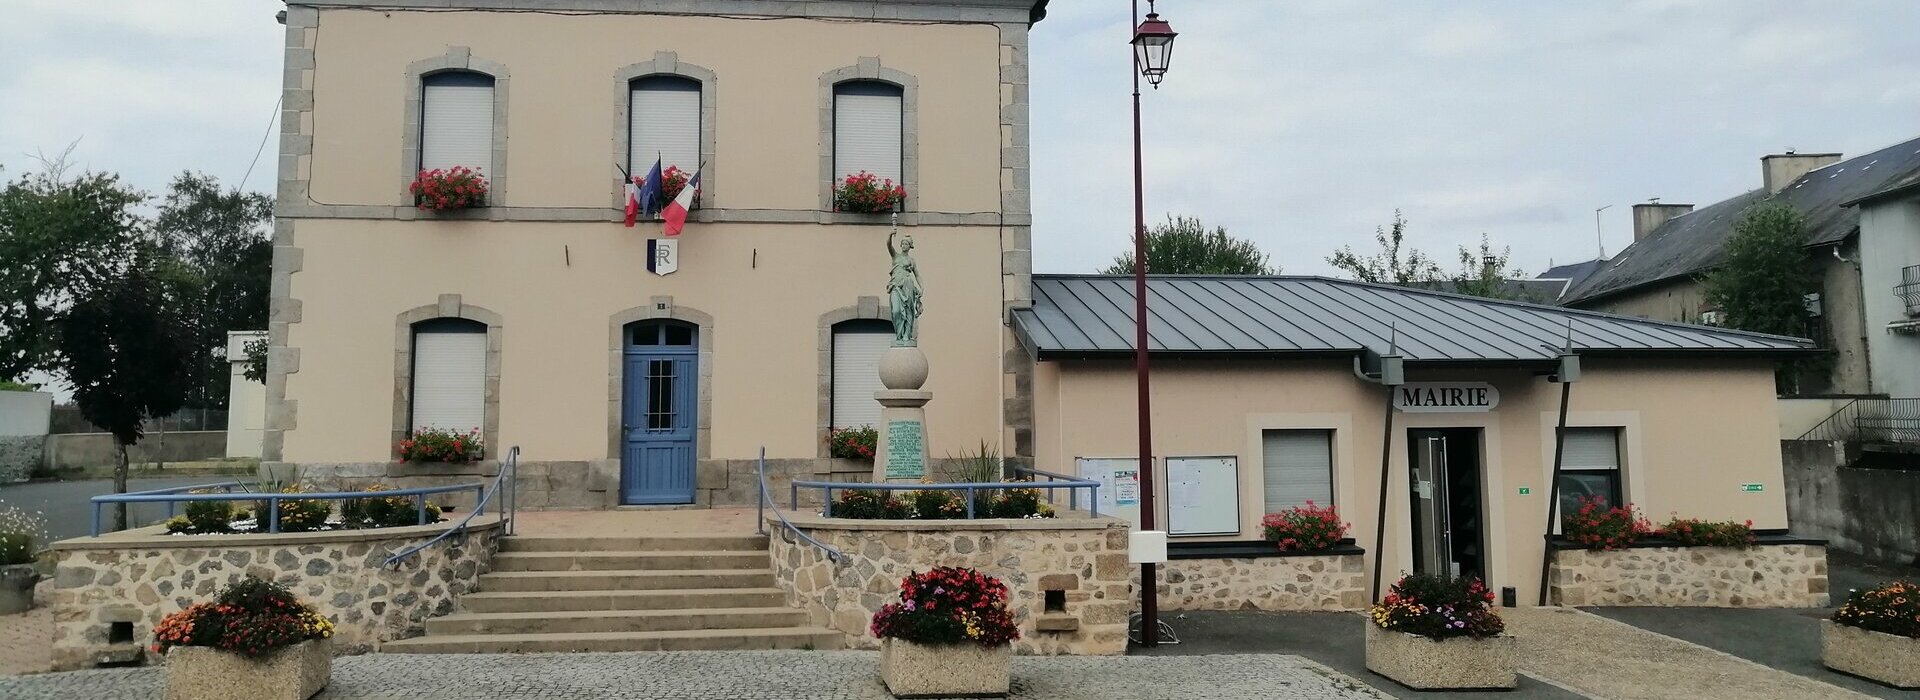 à la porte d’entrée ouest du département de la Creuse, dans le Limousin